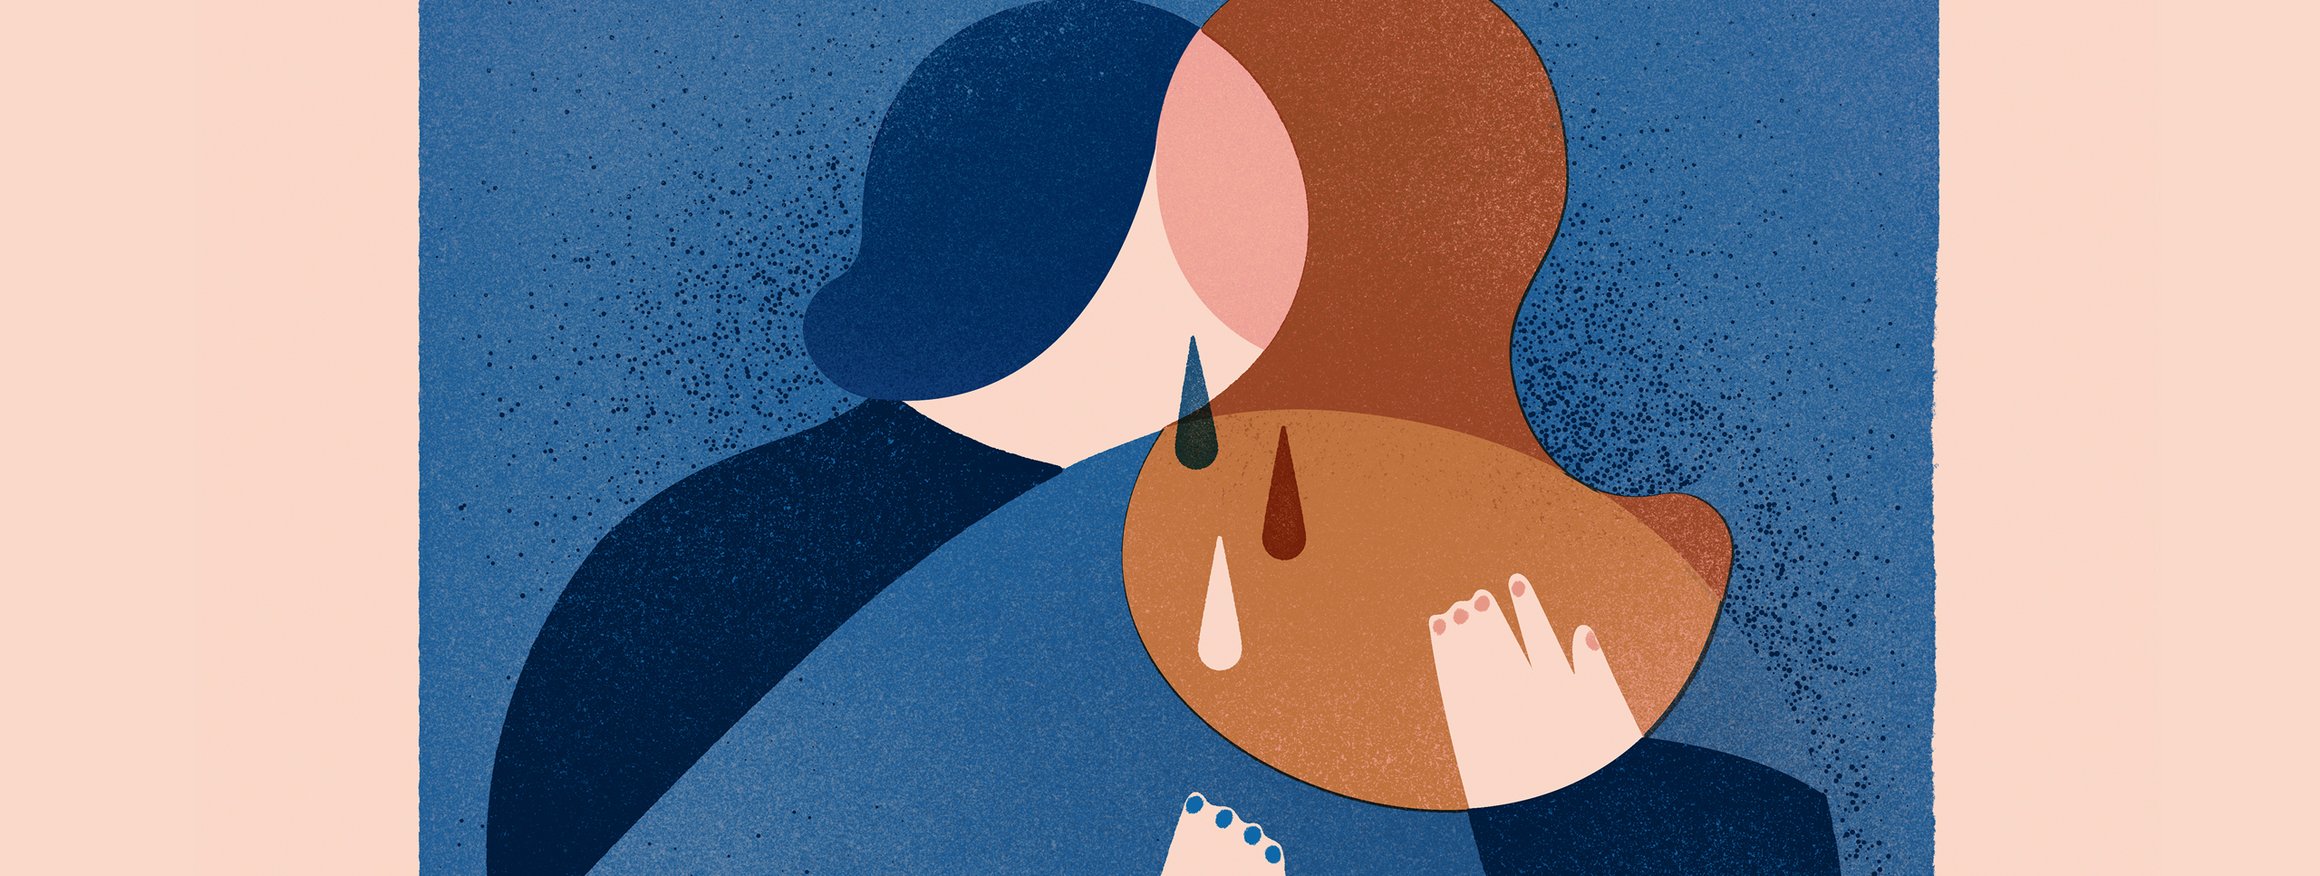 Die Illustration zeigt zwei Personen, die sich weinend und in Trauer umarmen